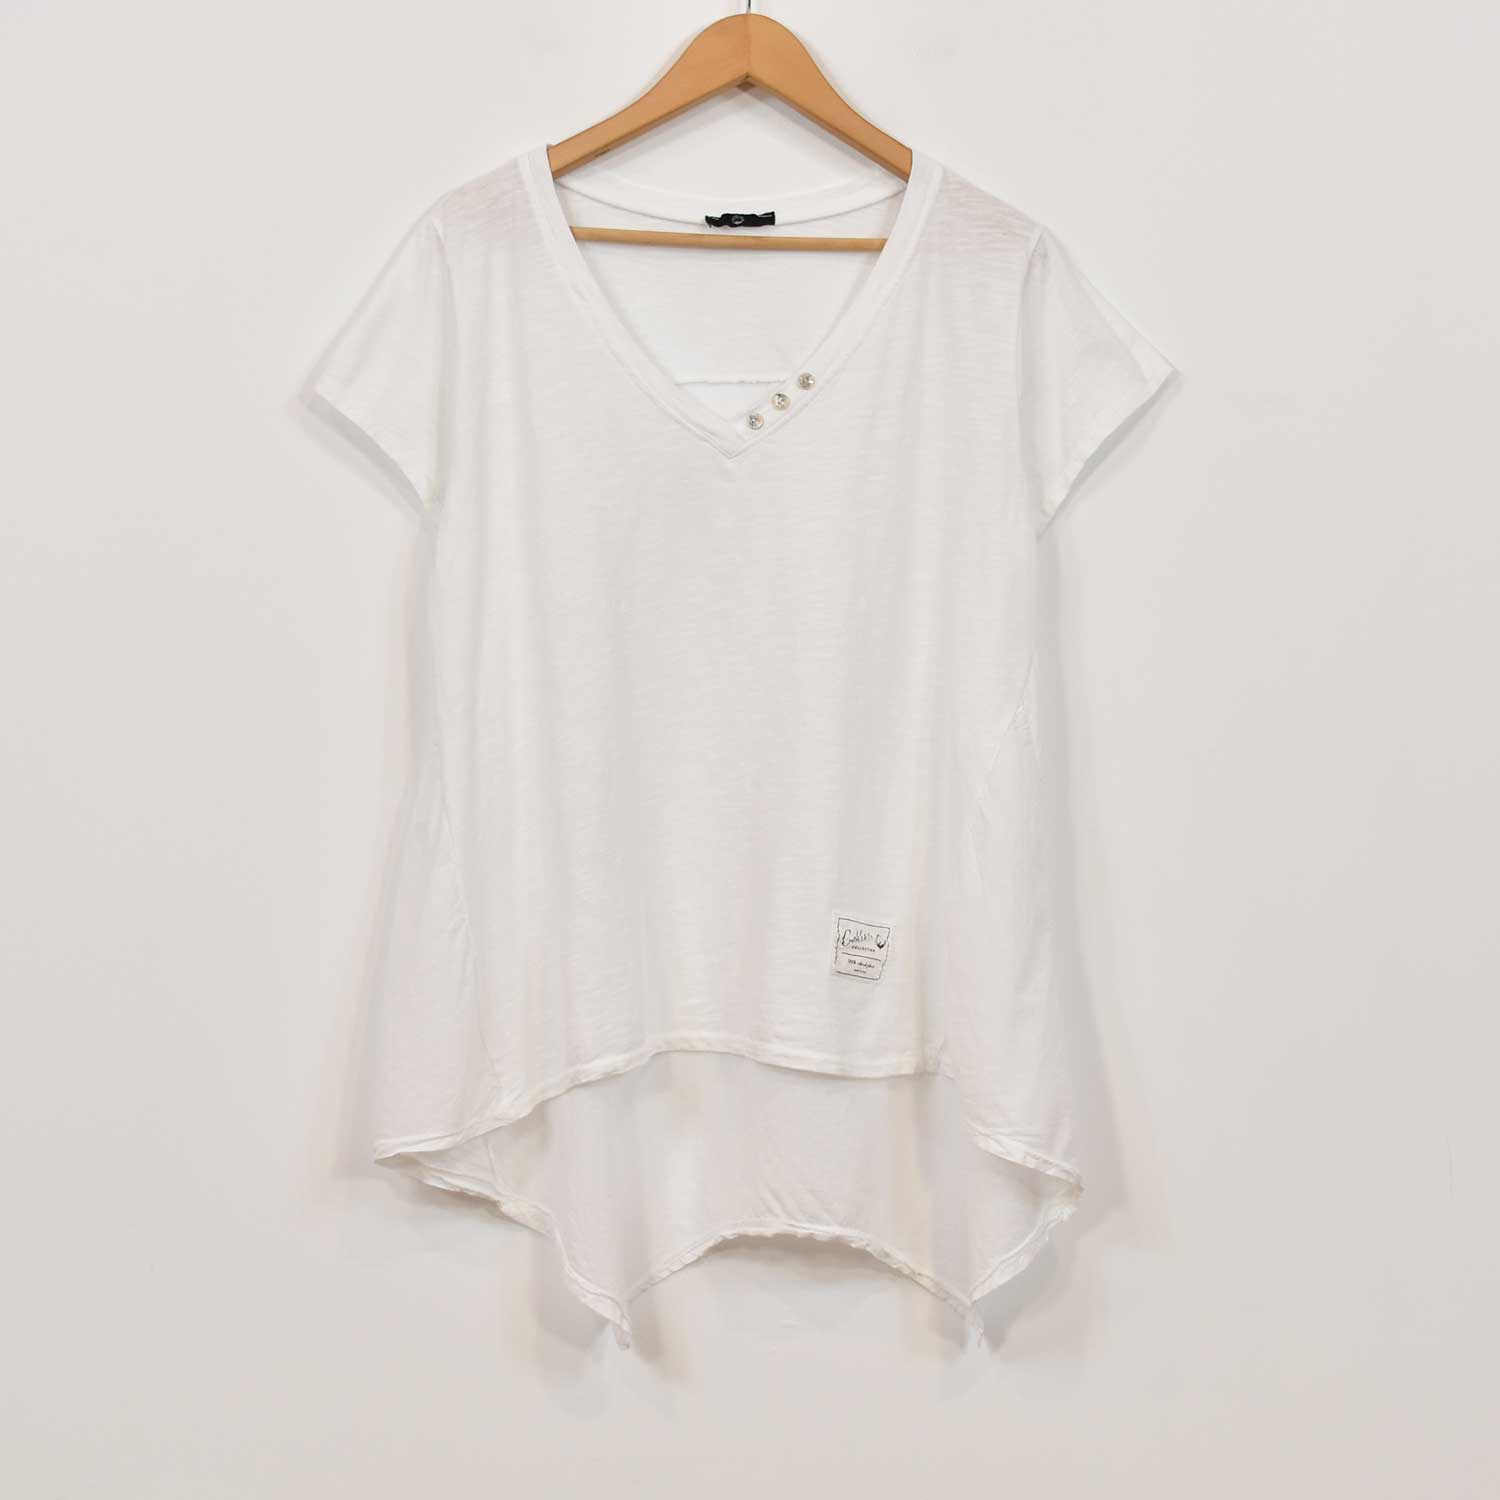 Camiseta picos blanca